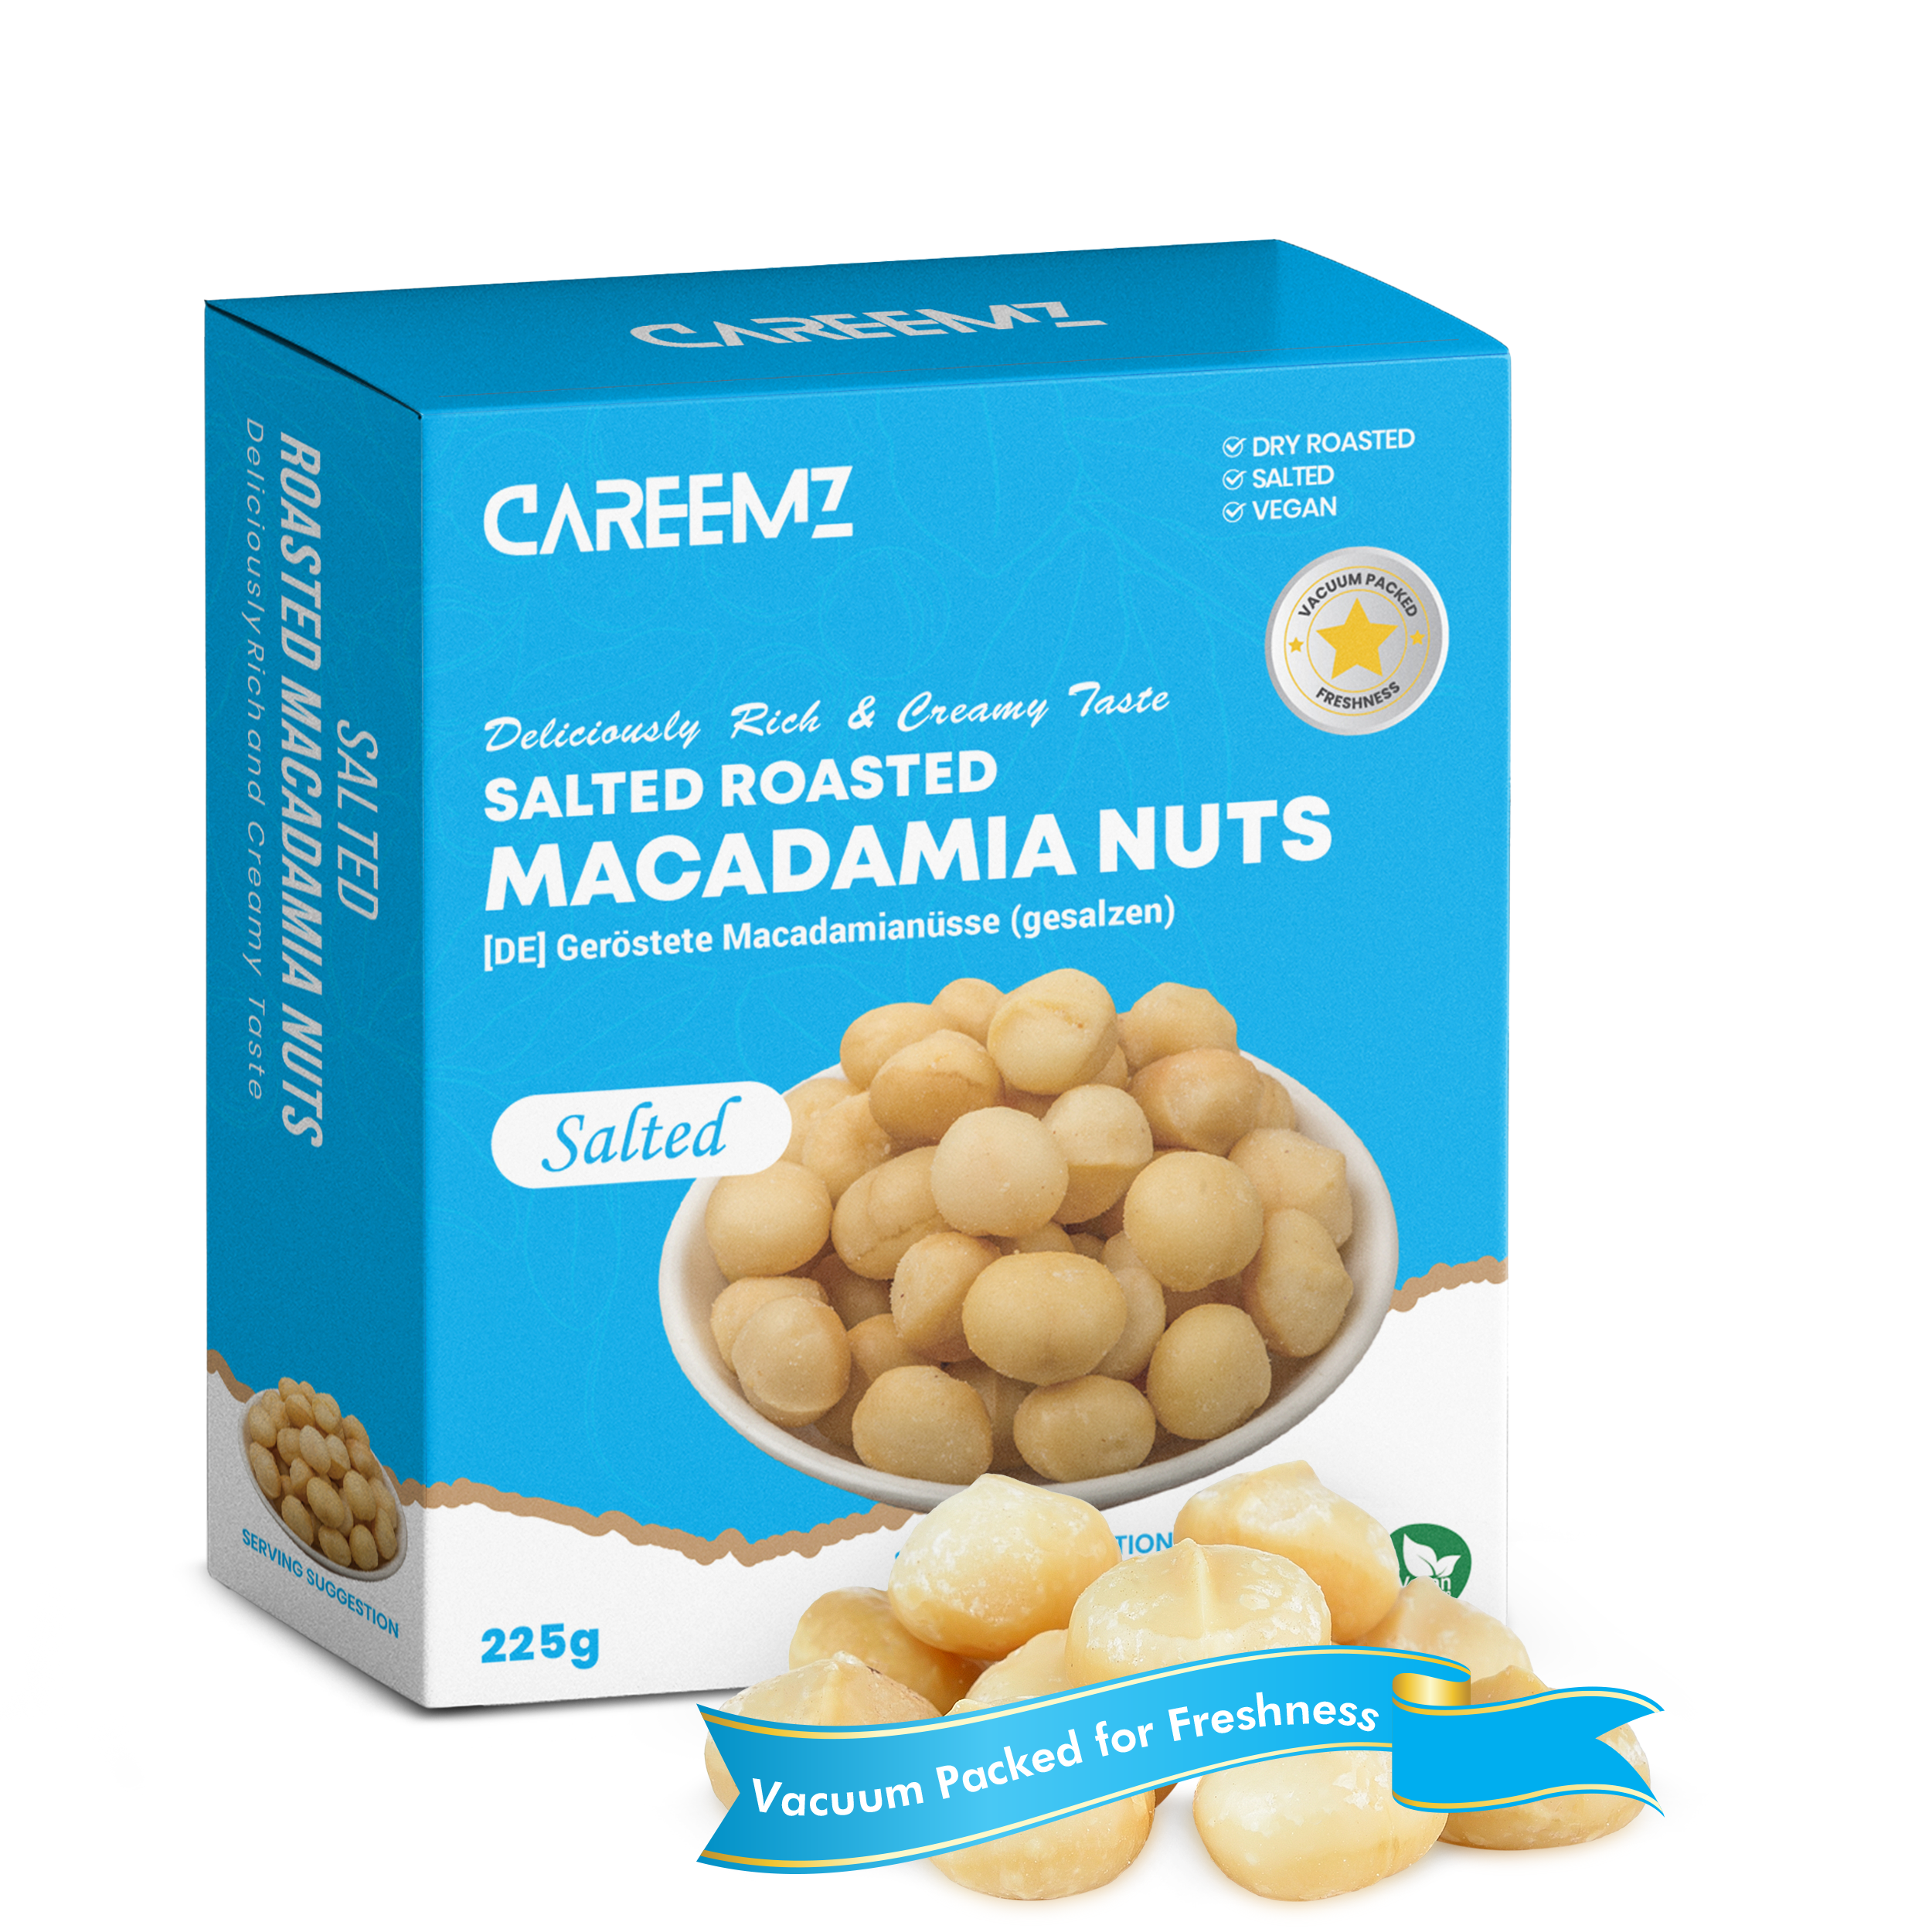 CAREEMZ Roasted Salted Macadamia Nuts